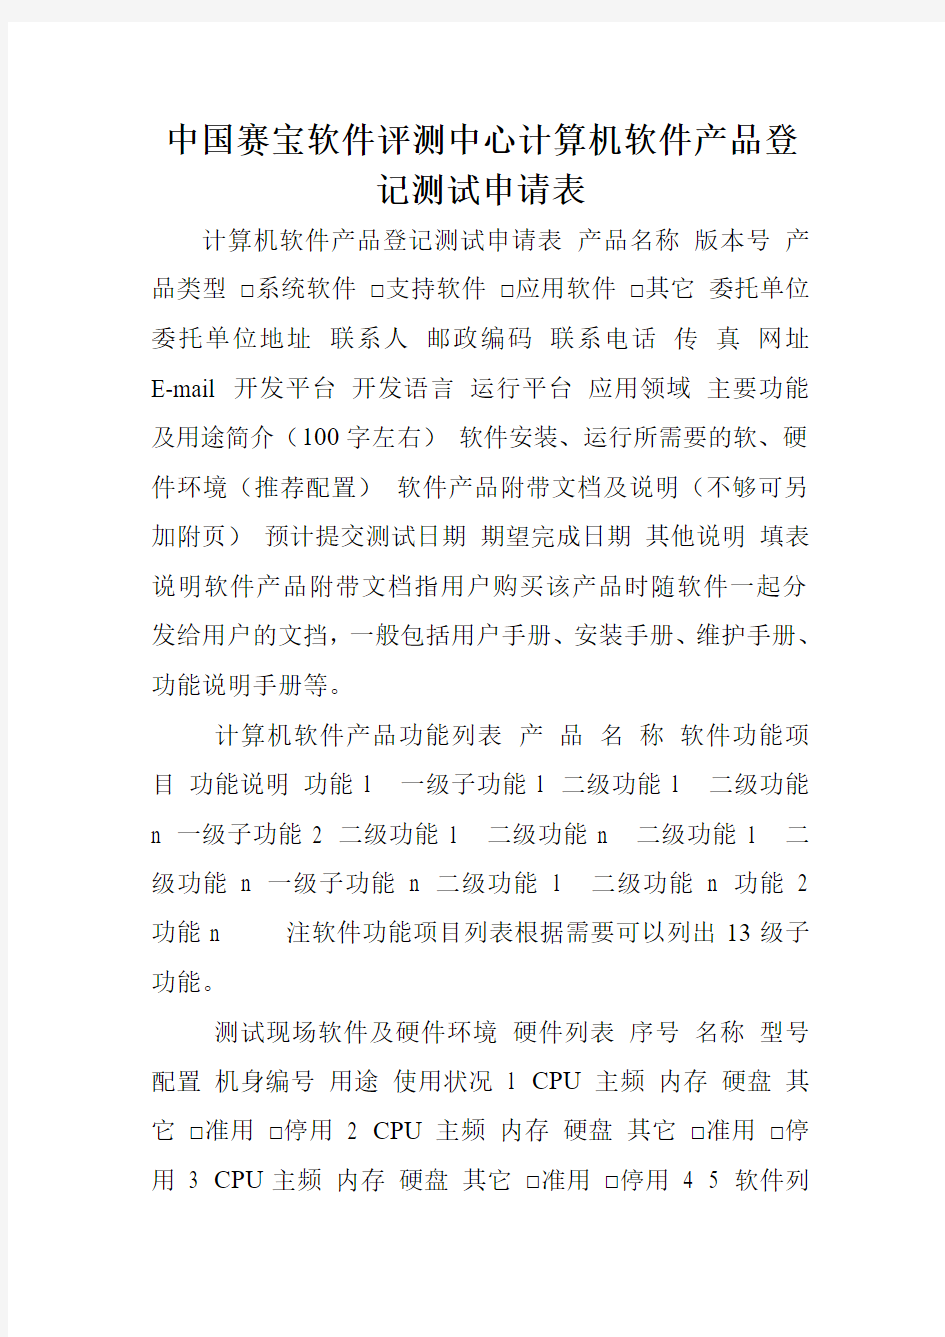 中国赛宝软件评测中心计算机软件产品登记测试申请表.doc